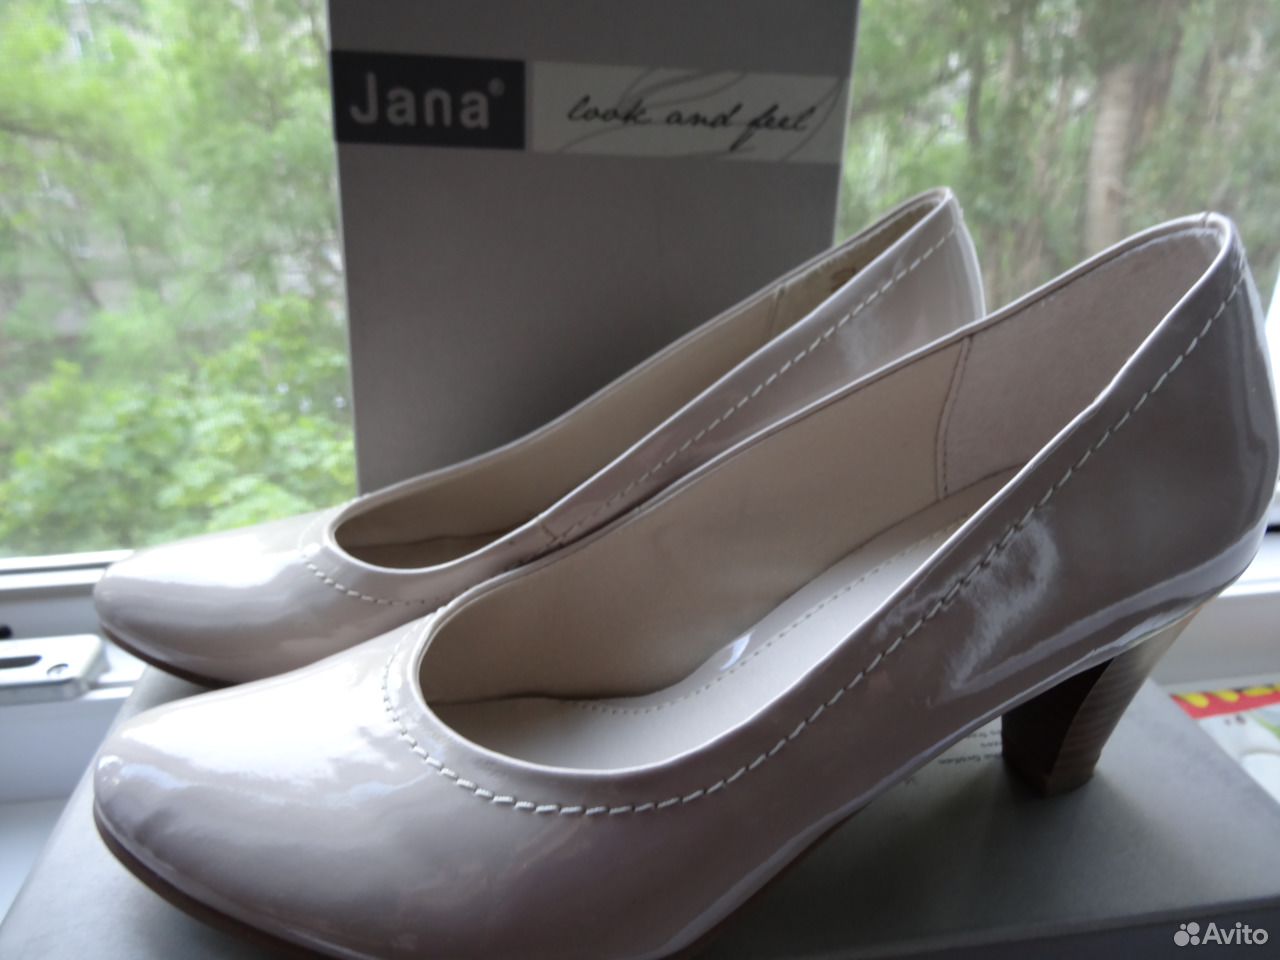 Купить туфли воронеж. Туфли кожаные Jana Германия. Обувь производства Германия Jana. Кожаные лаковые балетки Hogl.